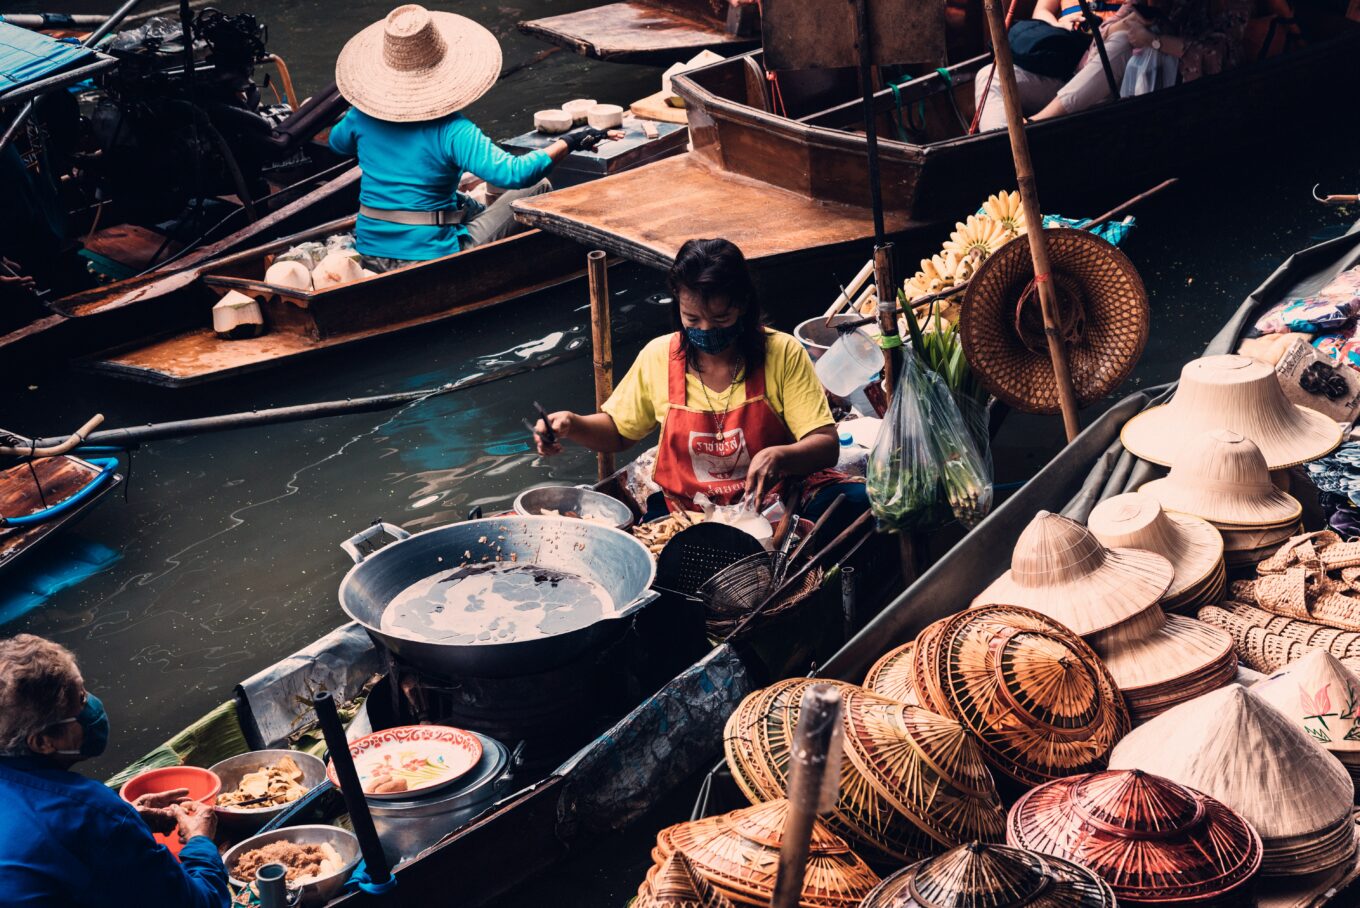 wat te doen in bangkok - activiteiten bangkok - floating market bangkok - streetfood bangkok